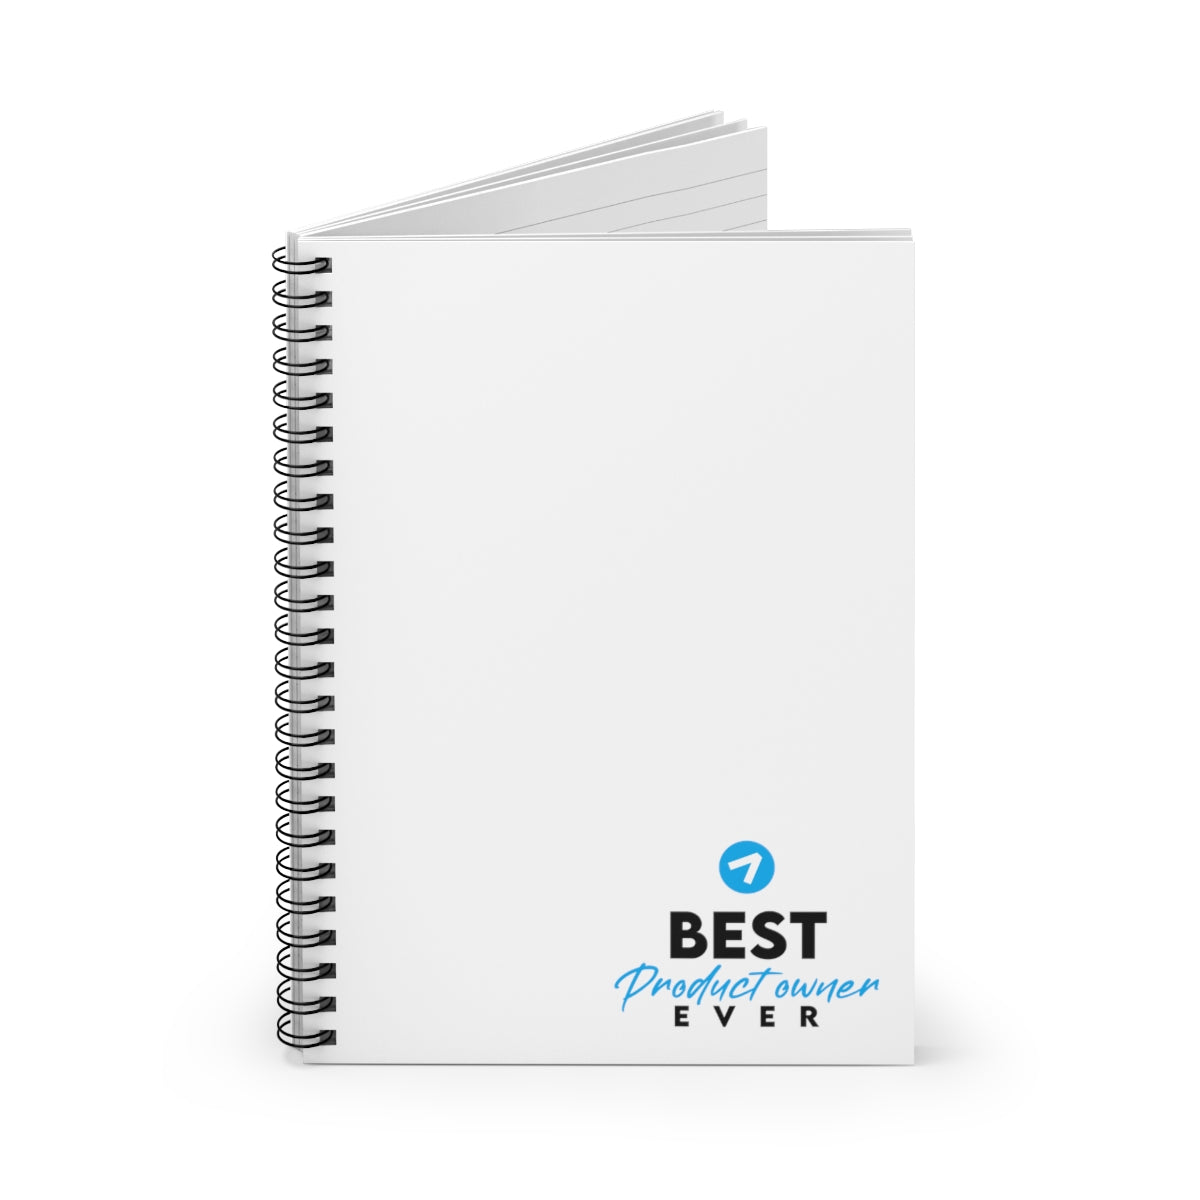 El mejor propietario de producto de todos los tiempos - Azul claro - Cuaderno de espiral - Línea reglada